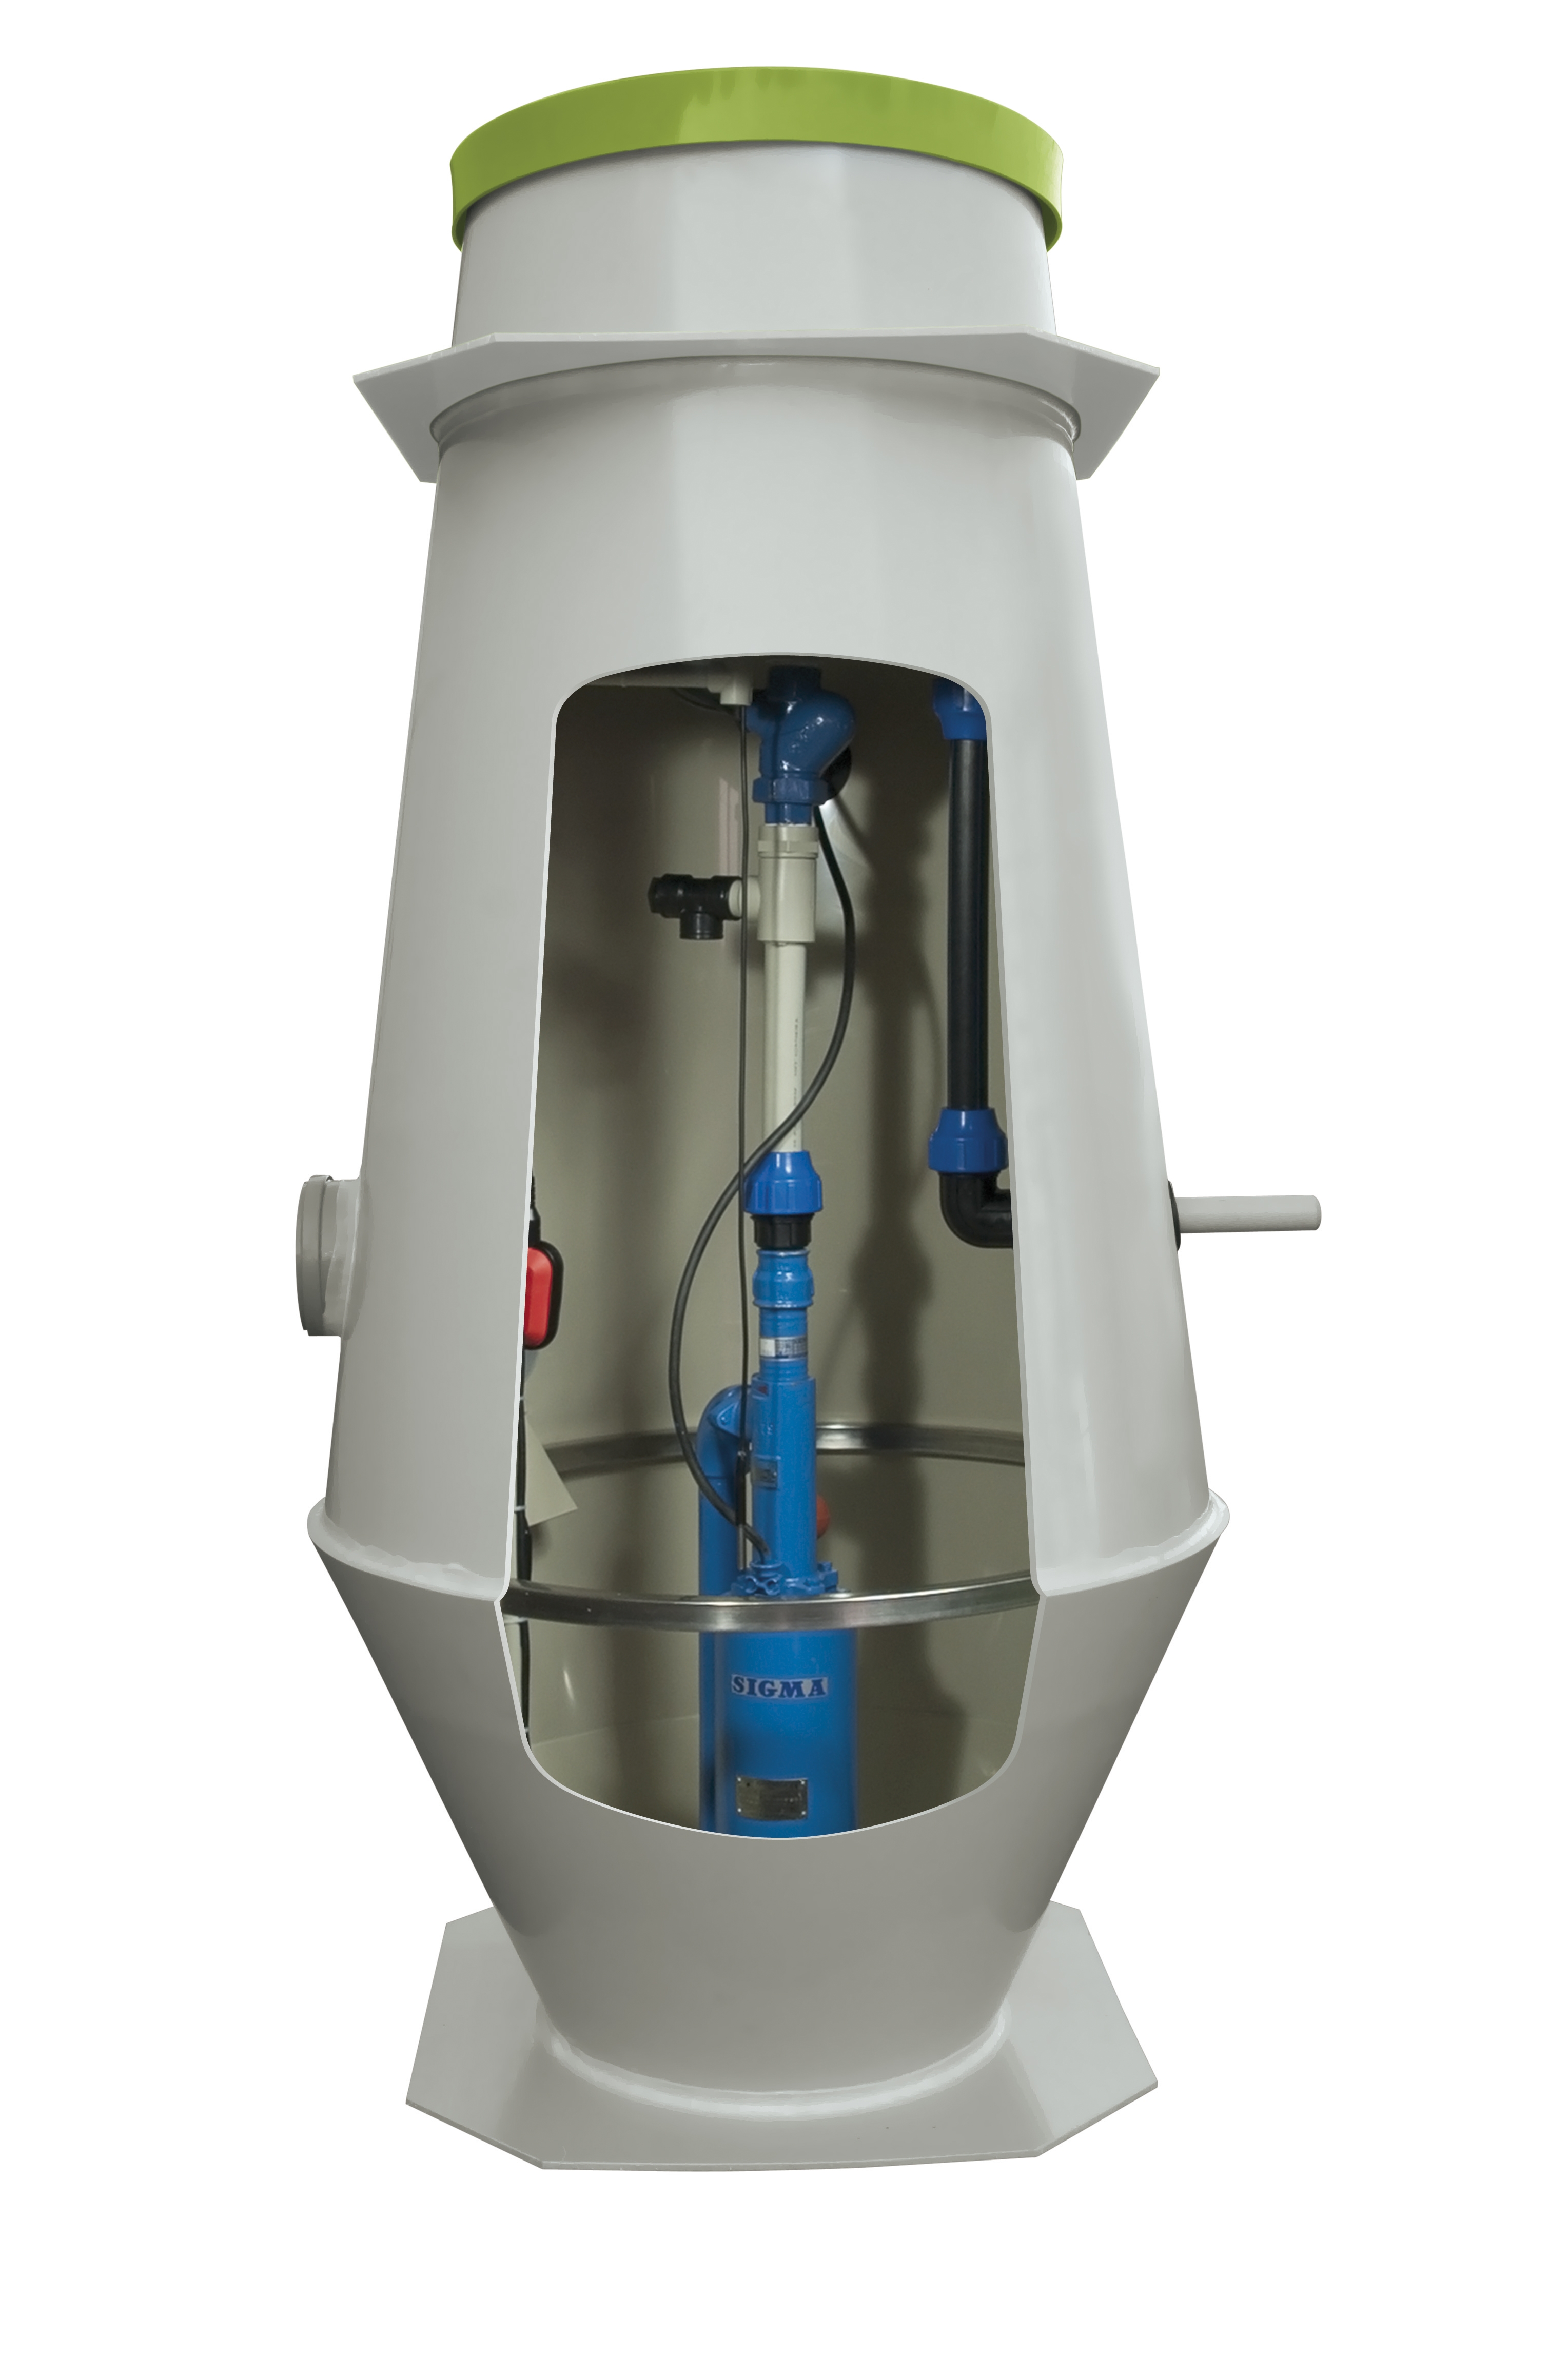 Čerpačky, čerpací jímky pro gravitační a pro tlakovou kanalizaci, ACS, automatická čerpací stanice